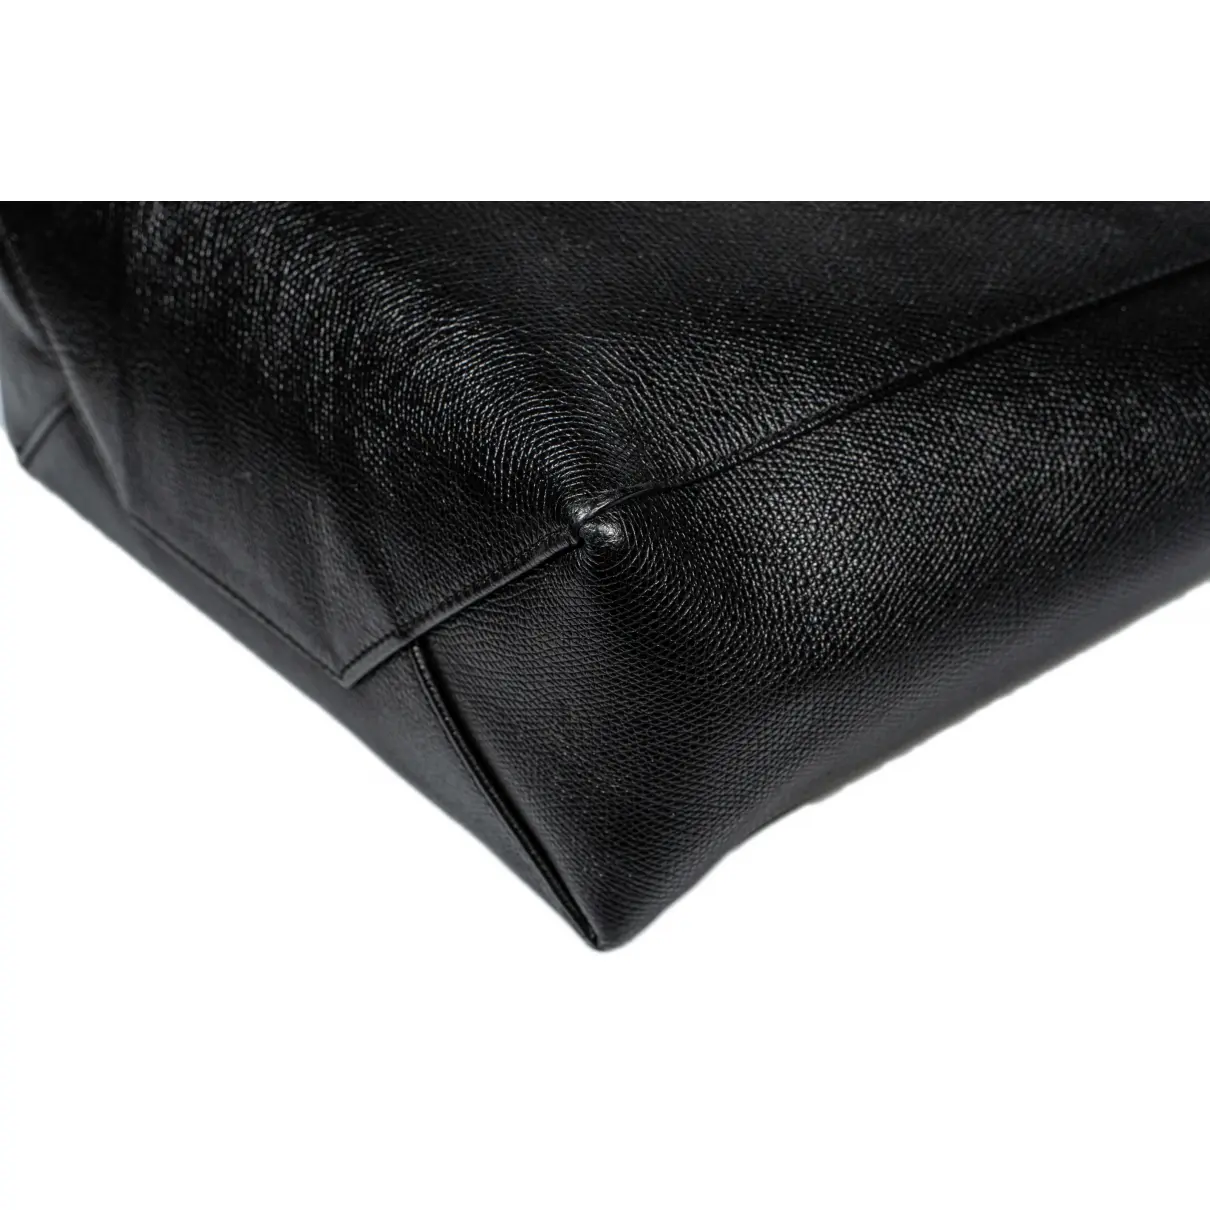 Buy Celine Cabas PM leather bag online